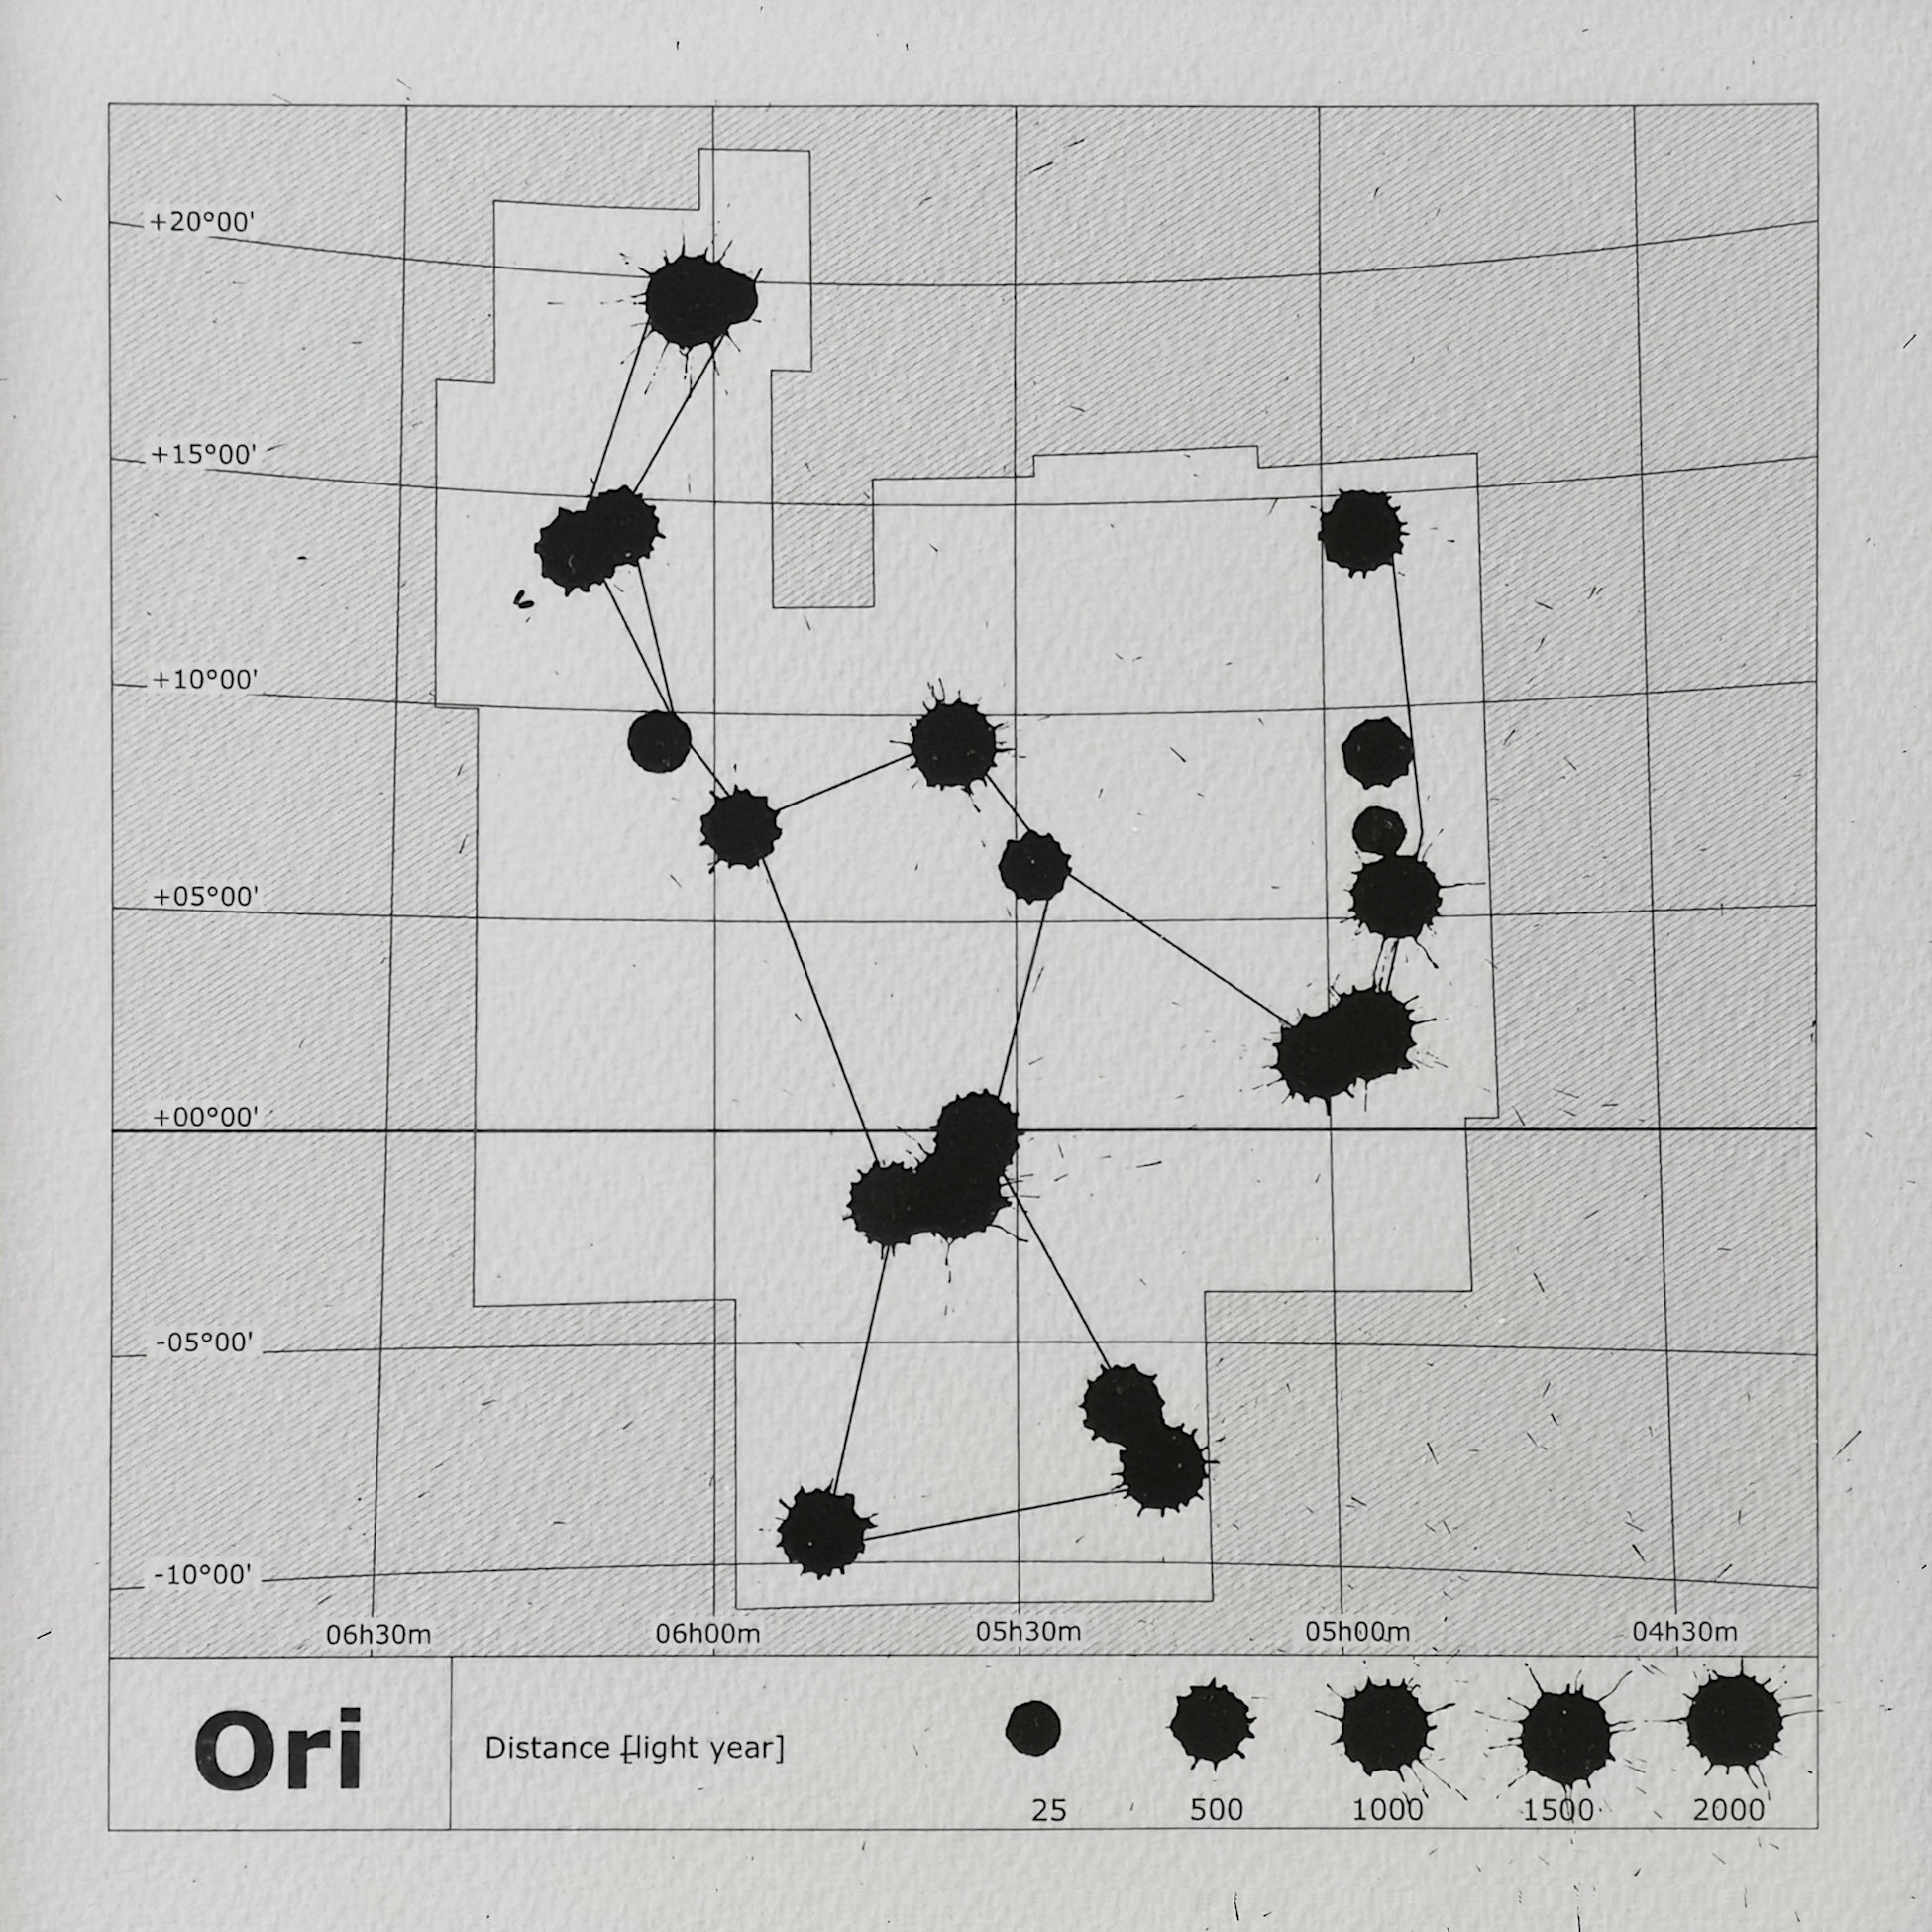 Szécsényi-Nagy Lóránd: Space-Time Maps – Constellations [Cas – Lyr – Ori - UMi], 2019. lézernyomat, tus, papír, egyenként 25x25 cm (részlet a teljes műből)